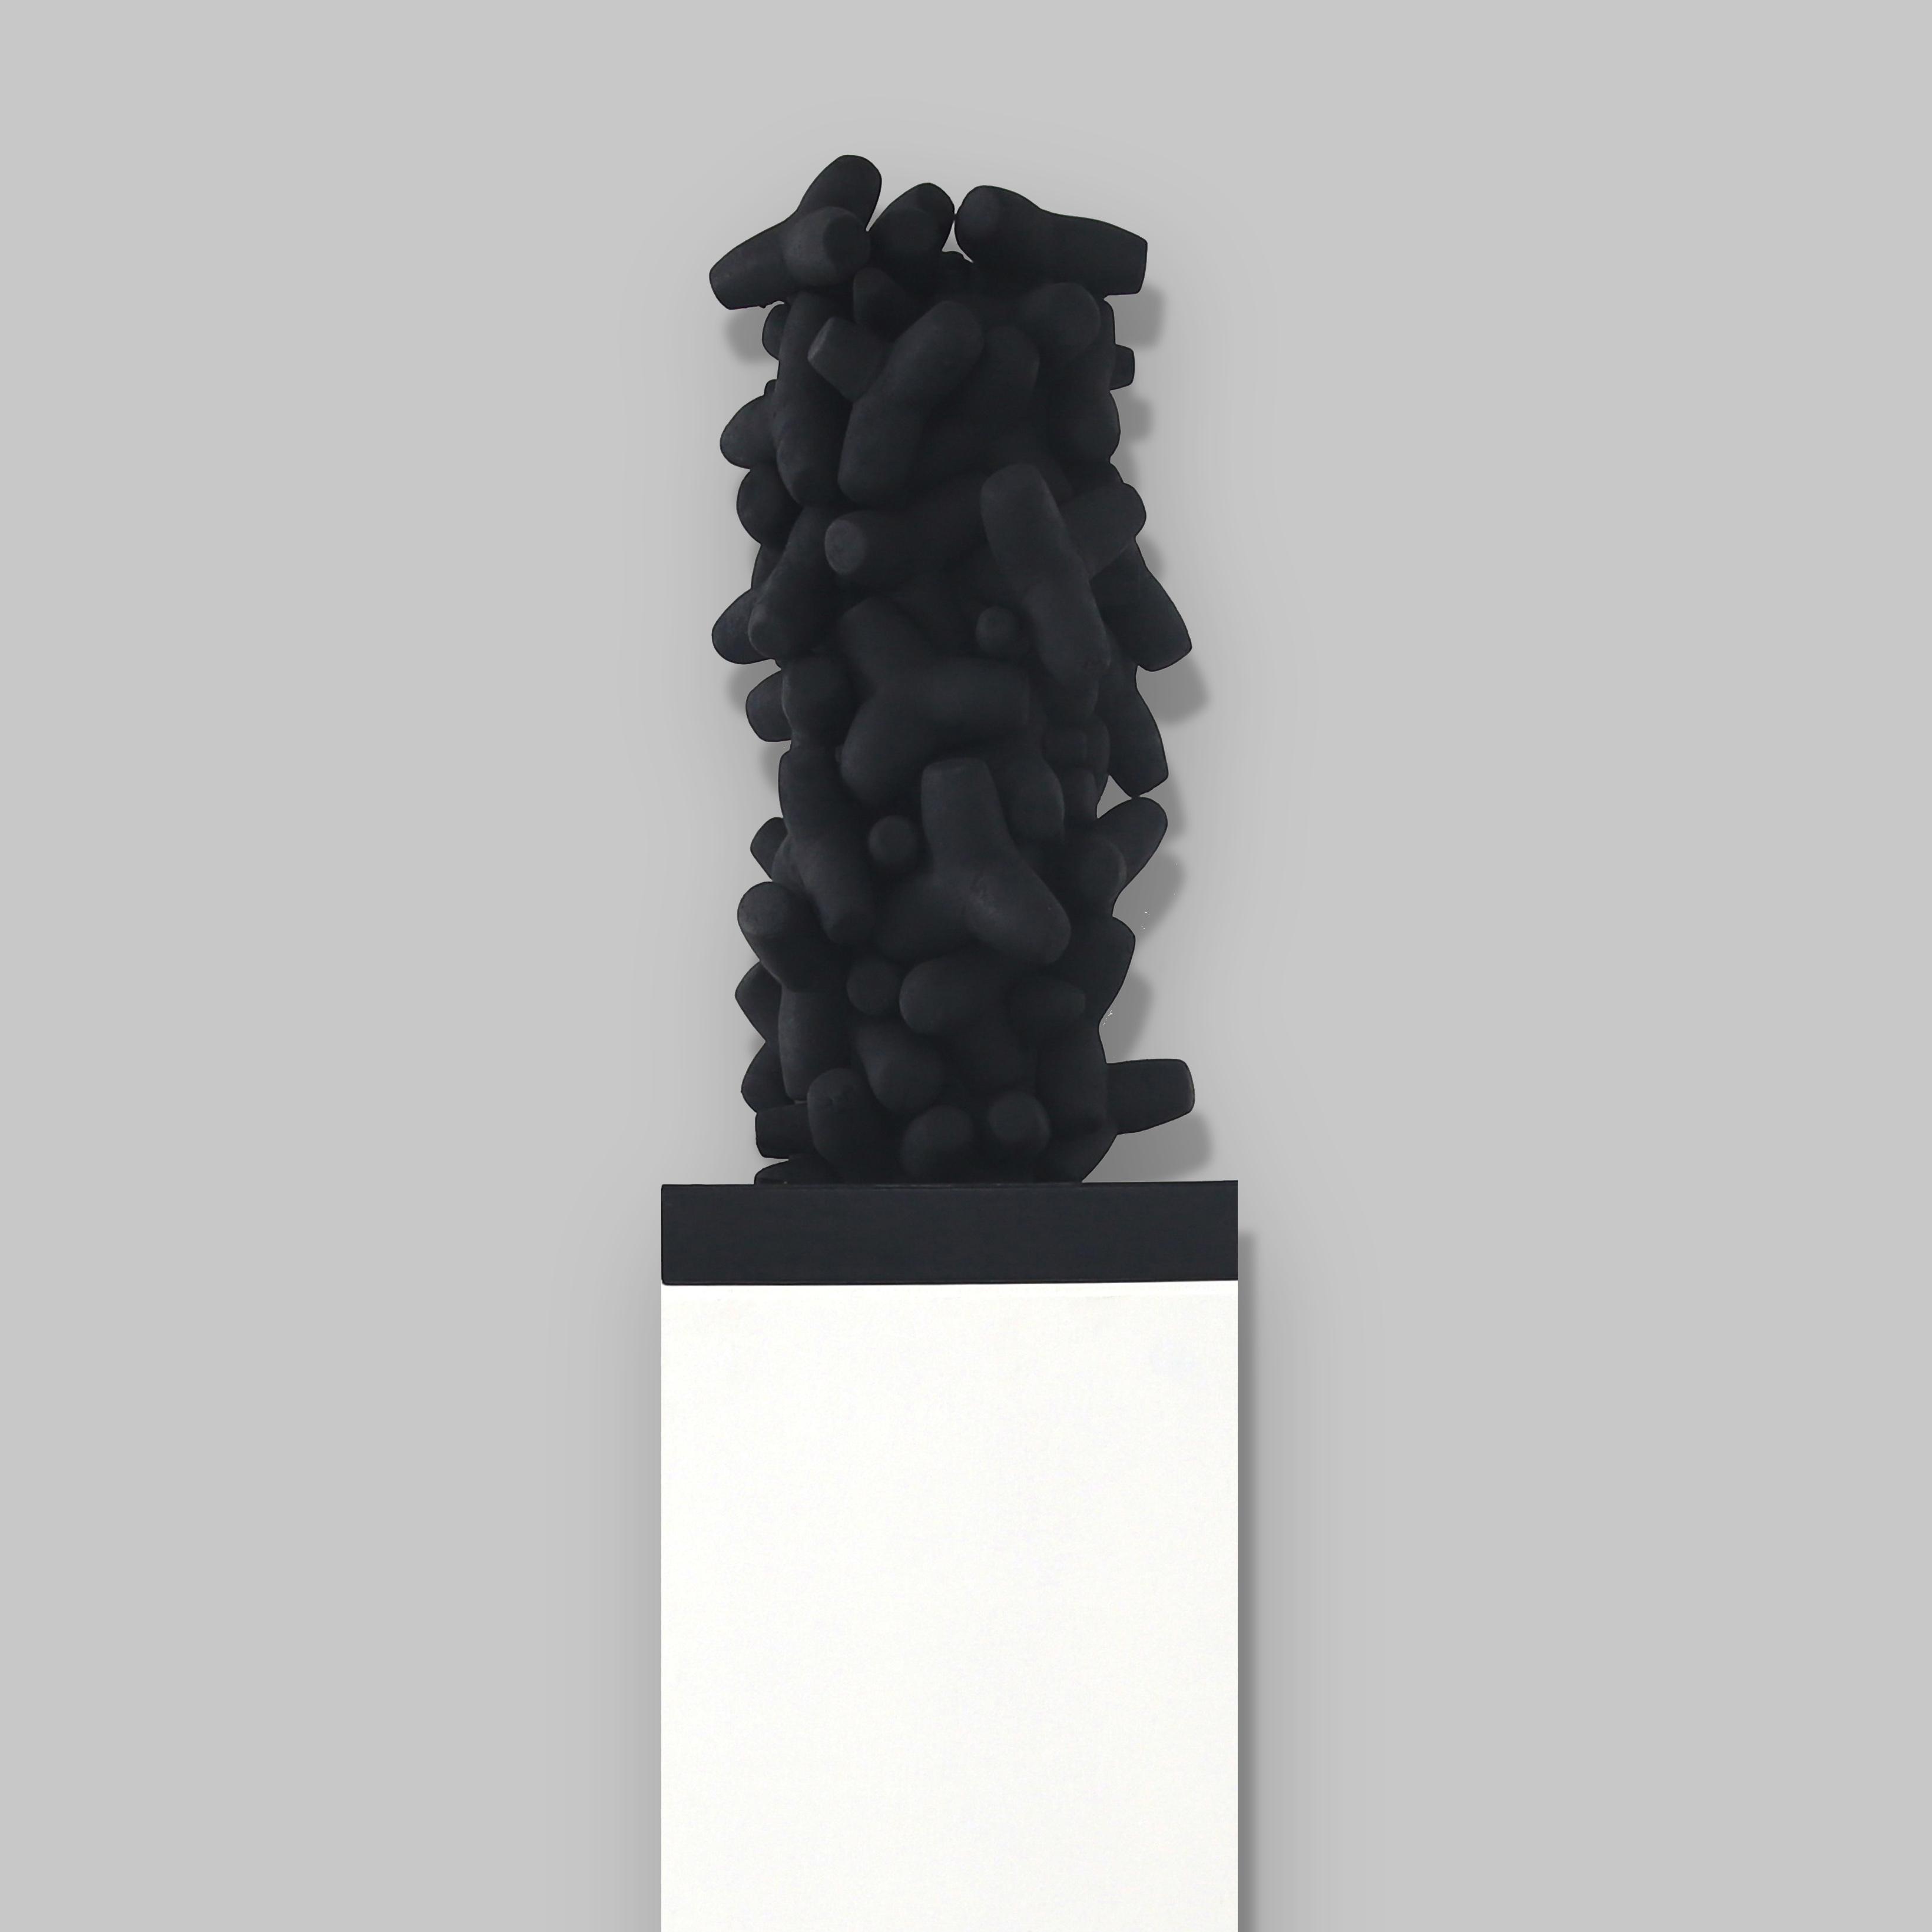 Sans horizon I, 2014
Sculpture matériaux composites.
90 x 46 x 46 cm